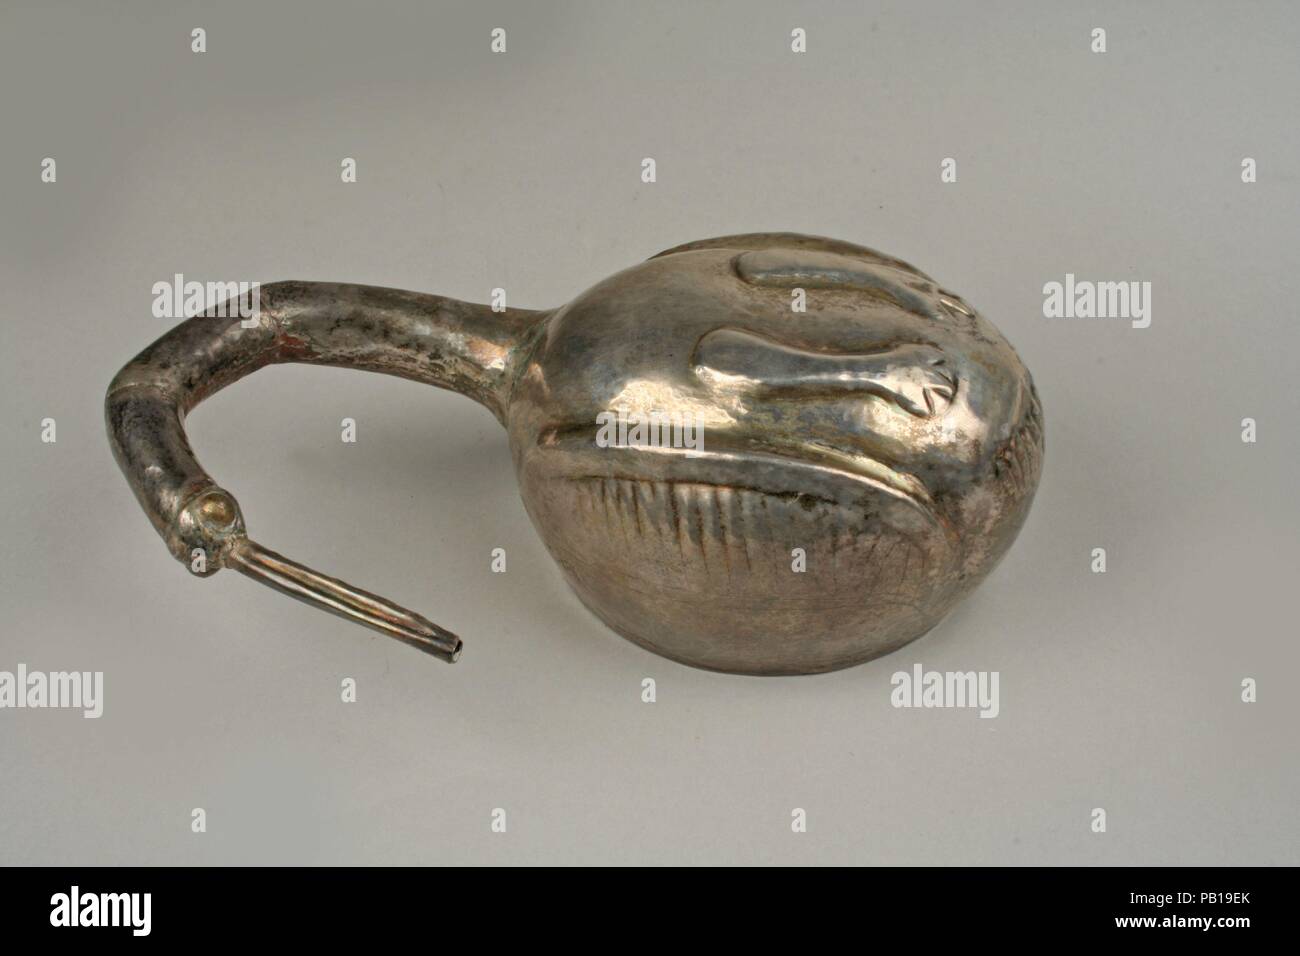 Silver Bird Vessel. Culture: Peru (?). Dimensions: H. 5 3/8 x W. 3 1/2 x D. 2 in. (13.7 x 8.9 x 5.1cm). Date: A.D. 900-1470. Museum: Metropolitan Museum of Art, New York, USA. Stock Photo